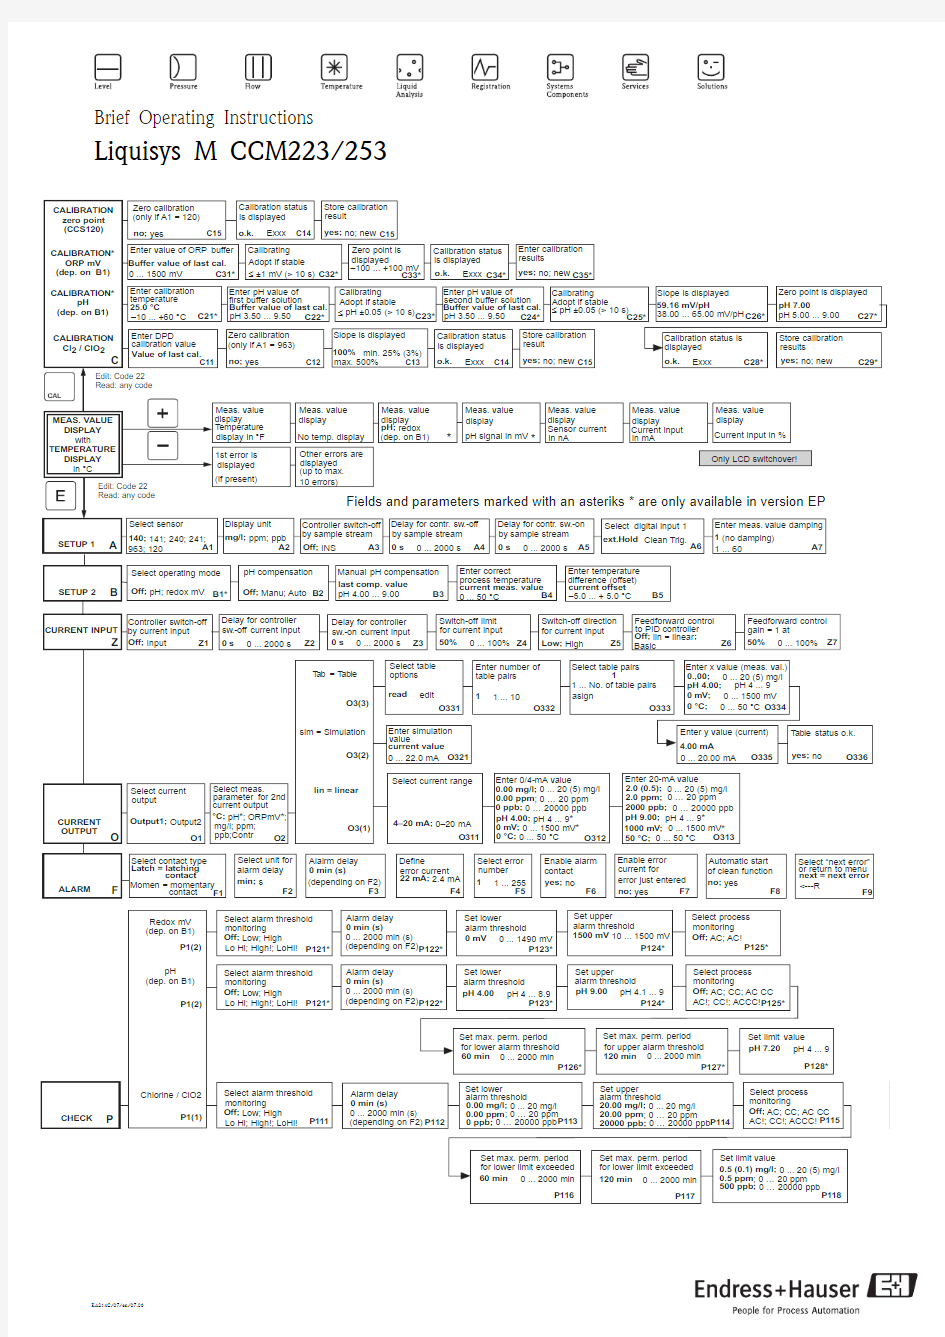 CCM223-余氯分析仪-菜单矩阵